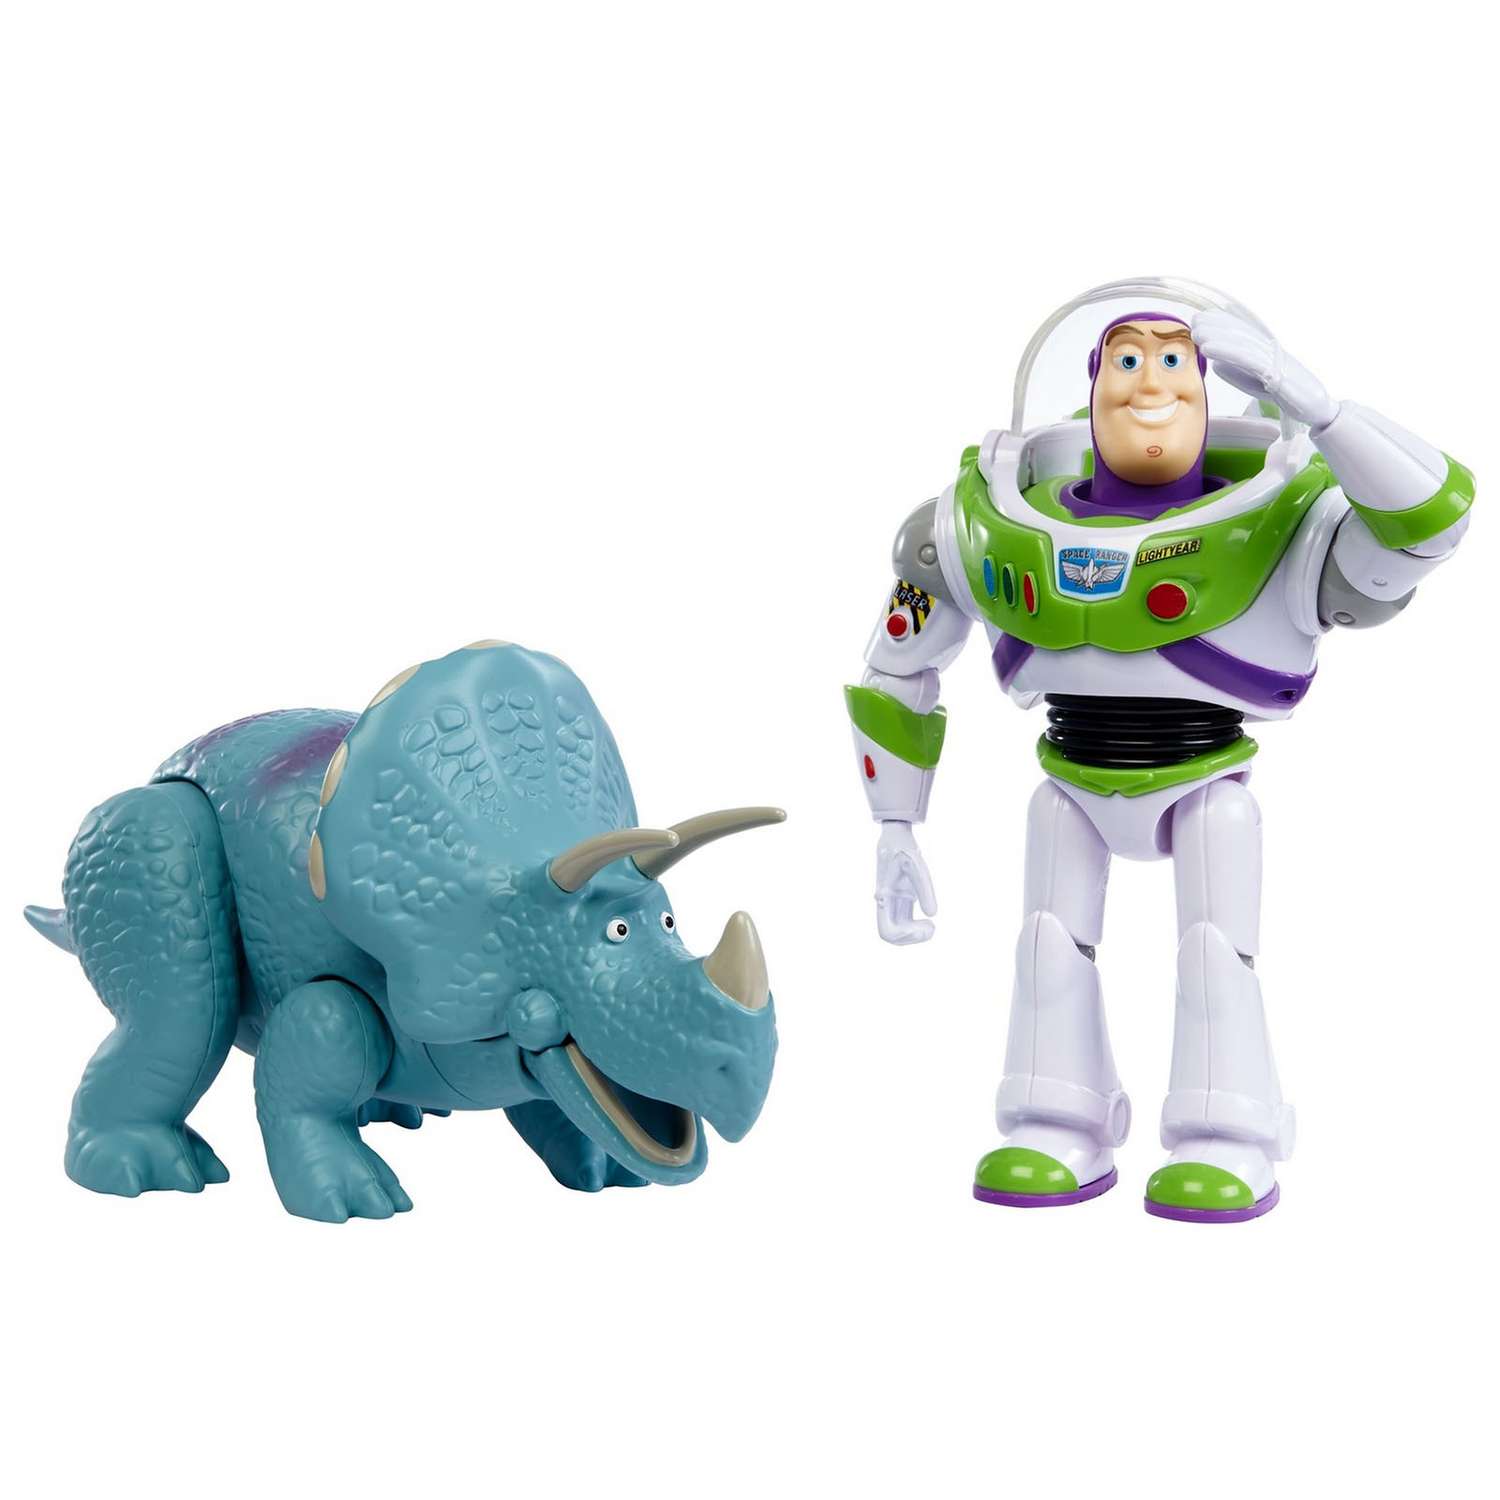 Набор фигурок Toy Story Базз Лайтер и Трикси GJH80 - фото 2